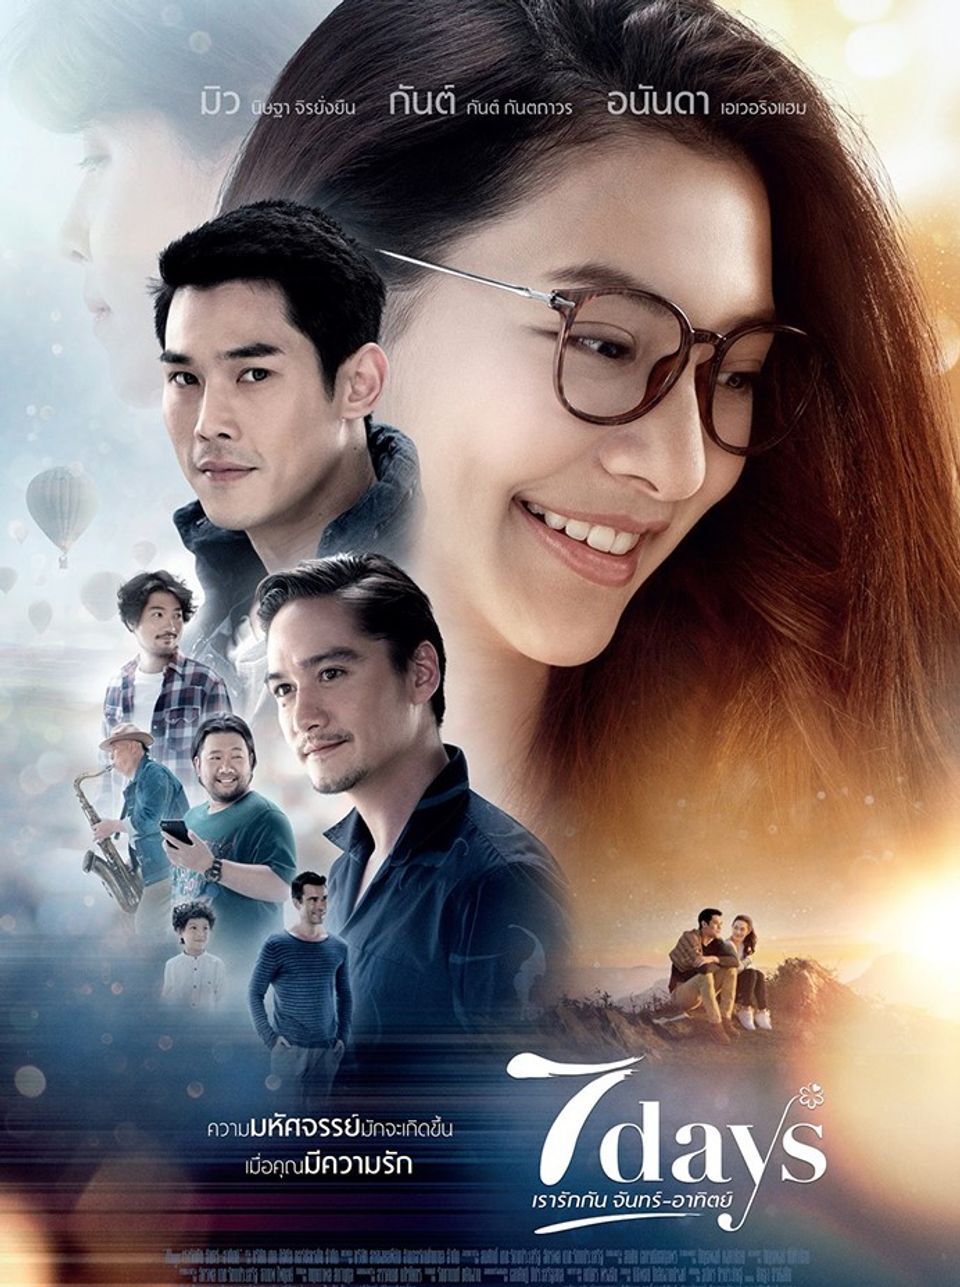 ภาพยนตร์ไทย “7 DAYS เรารักกัน จันทร์-อาทิตย์” (7 DAYS)